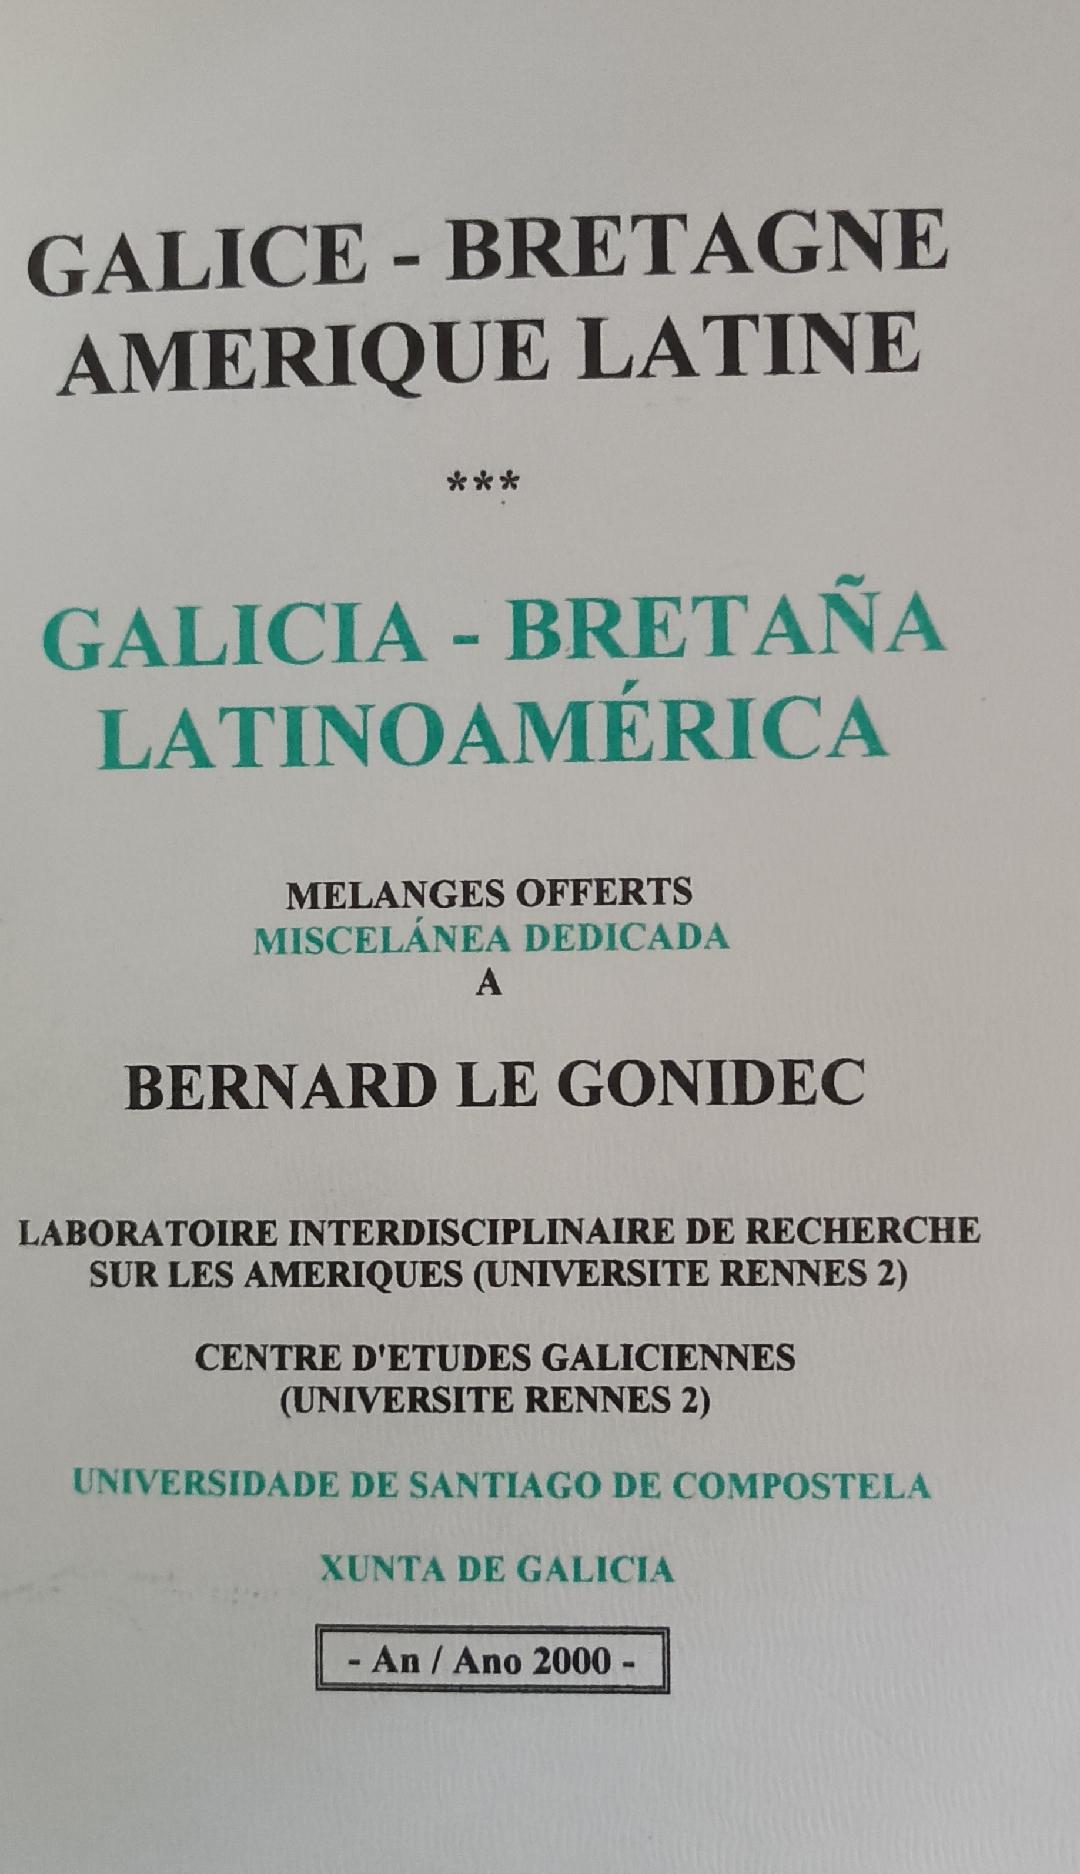 Imagen de portada del libro Galice - Bretagne - Amérique Latine